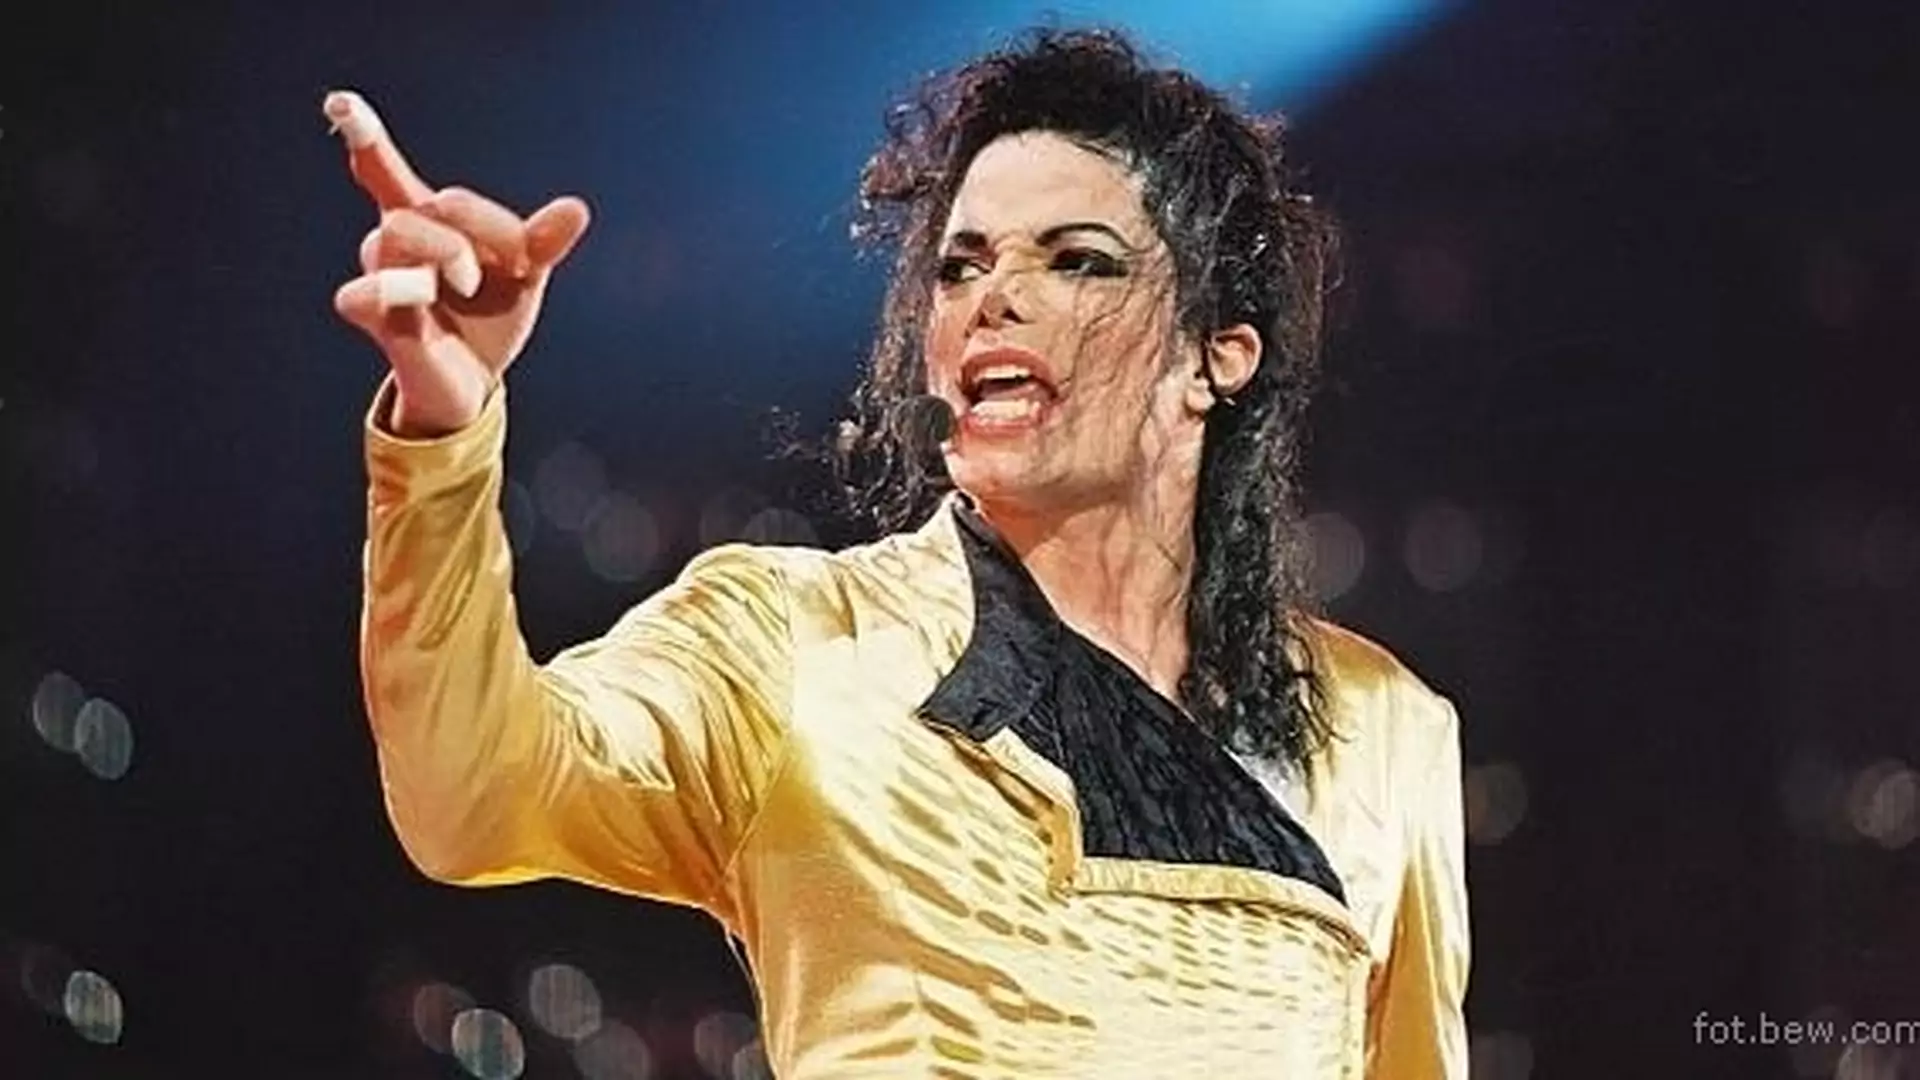 Jackson wciąż inspiruje: modne kurtki i dodatki w stylu króla popu